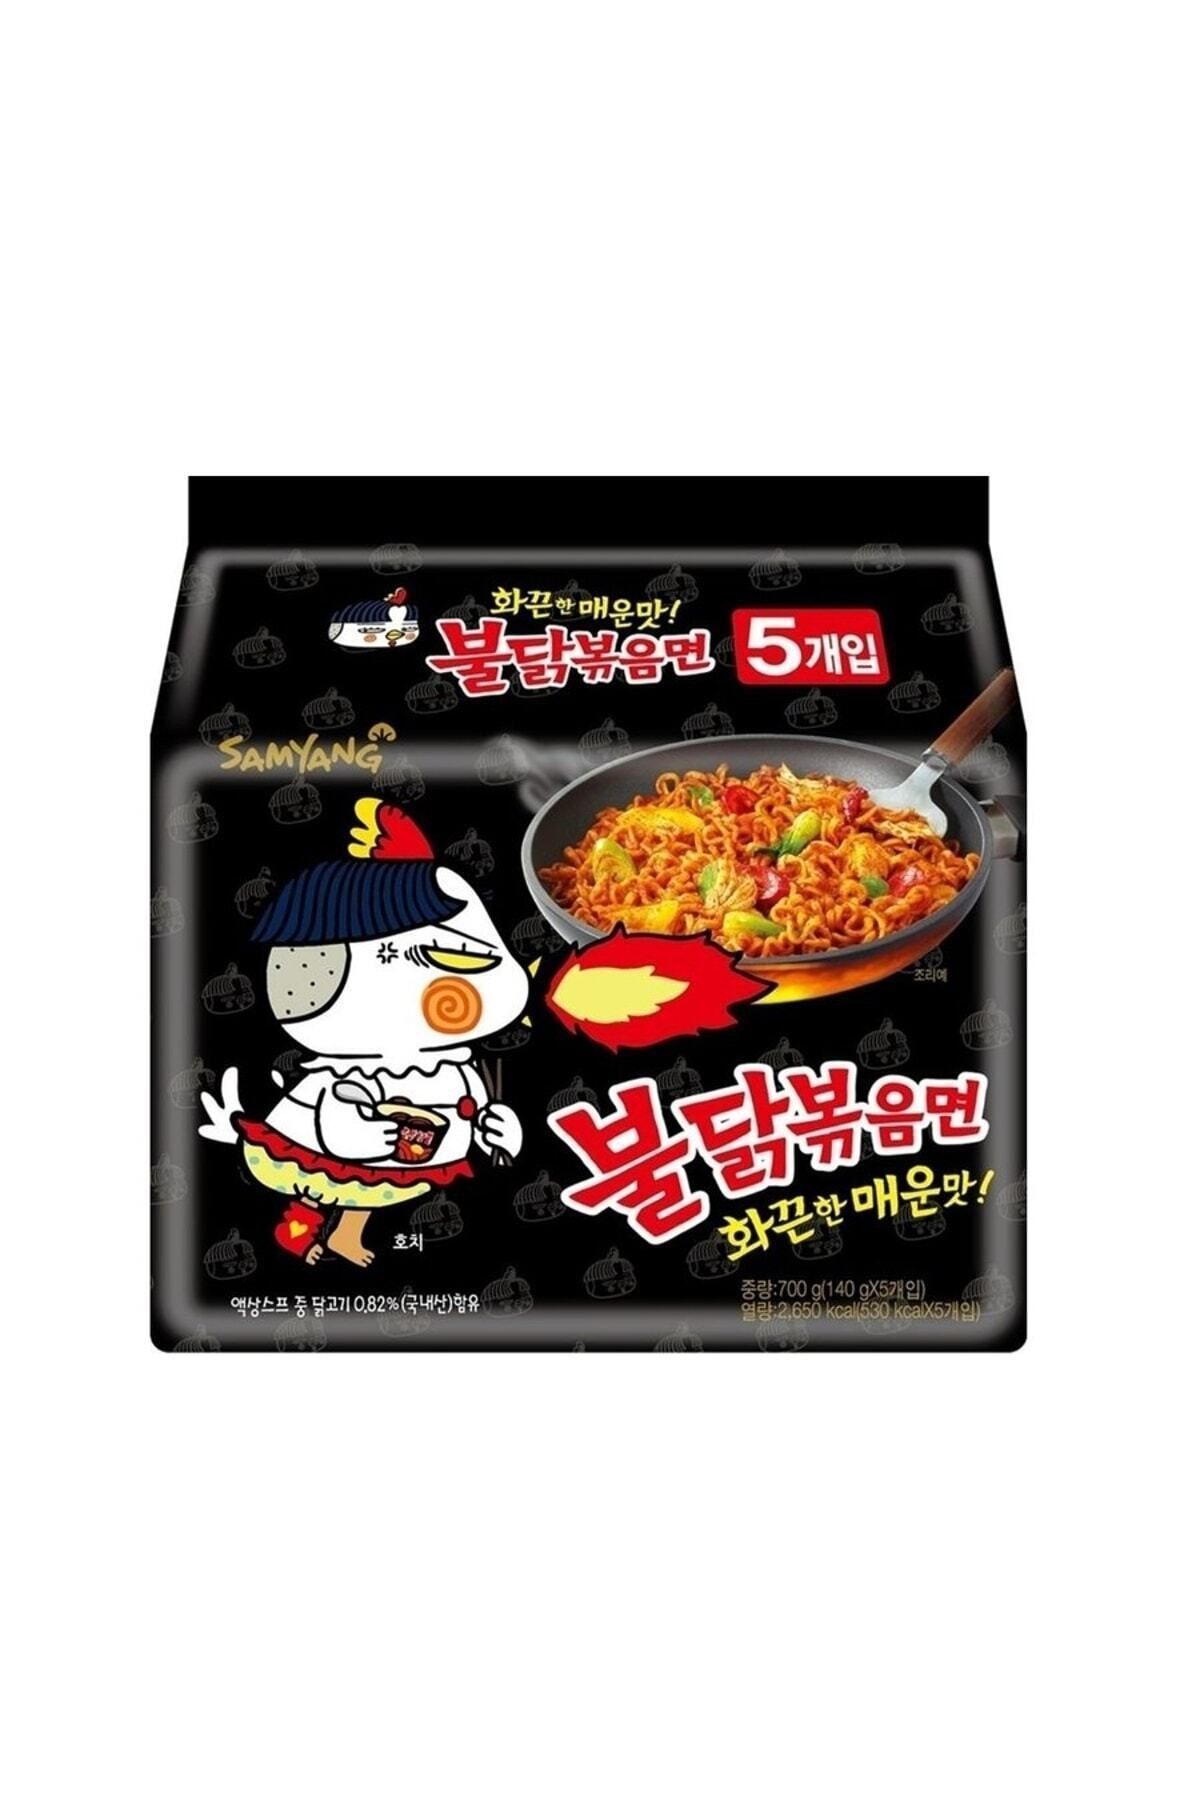 samyang 5'li Orijinal Acılı Buldak Ramen  Hazır Noodle